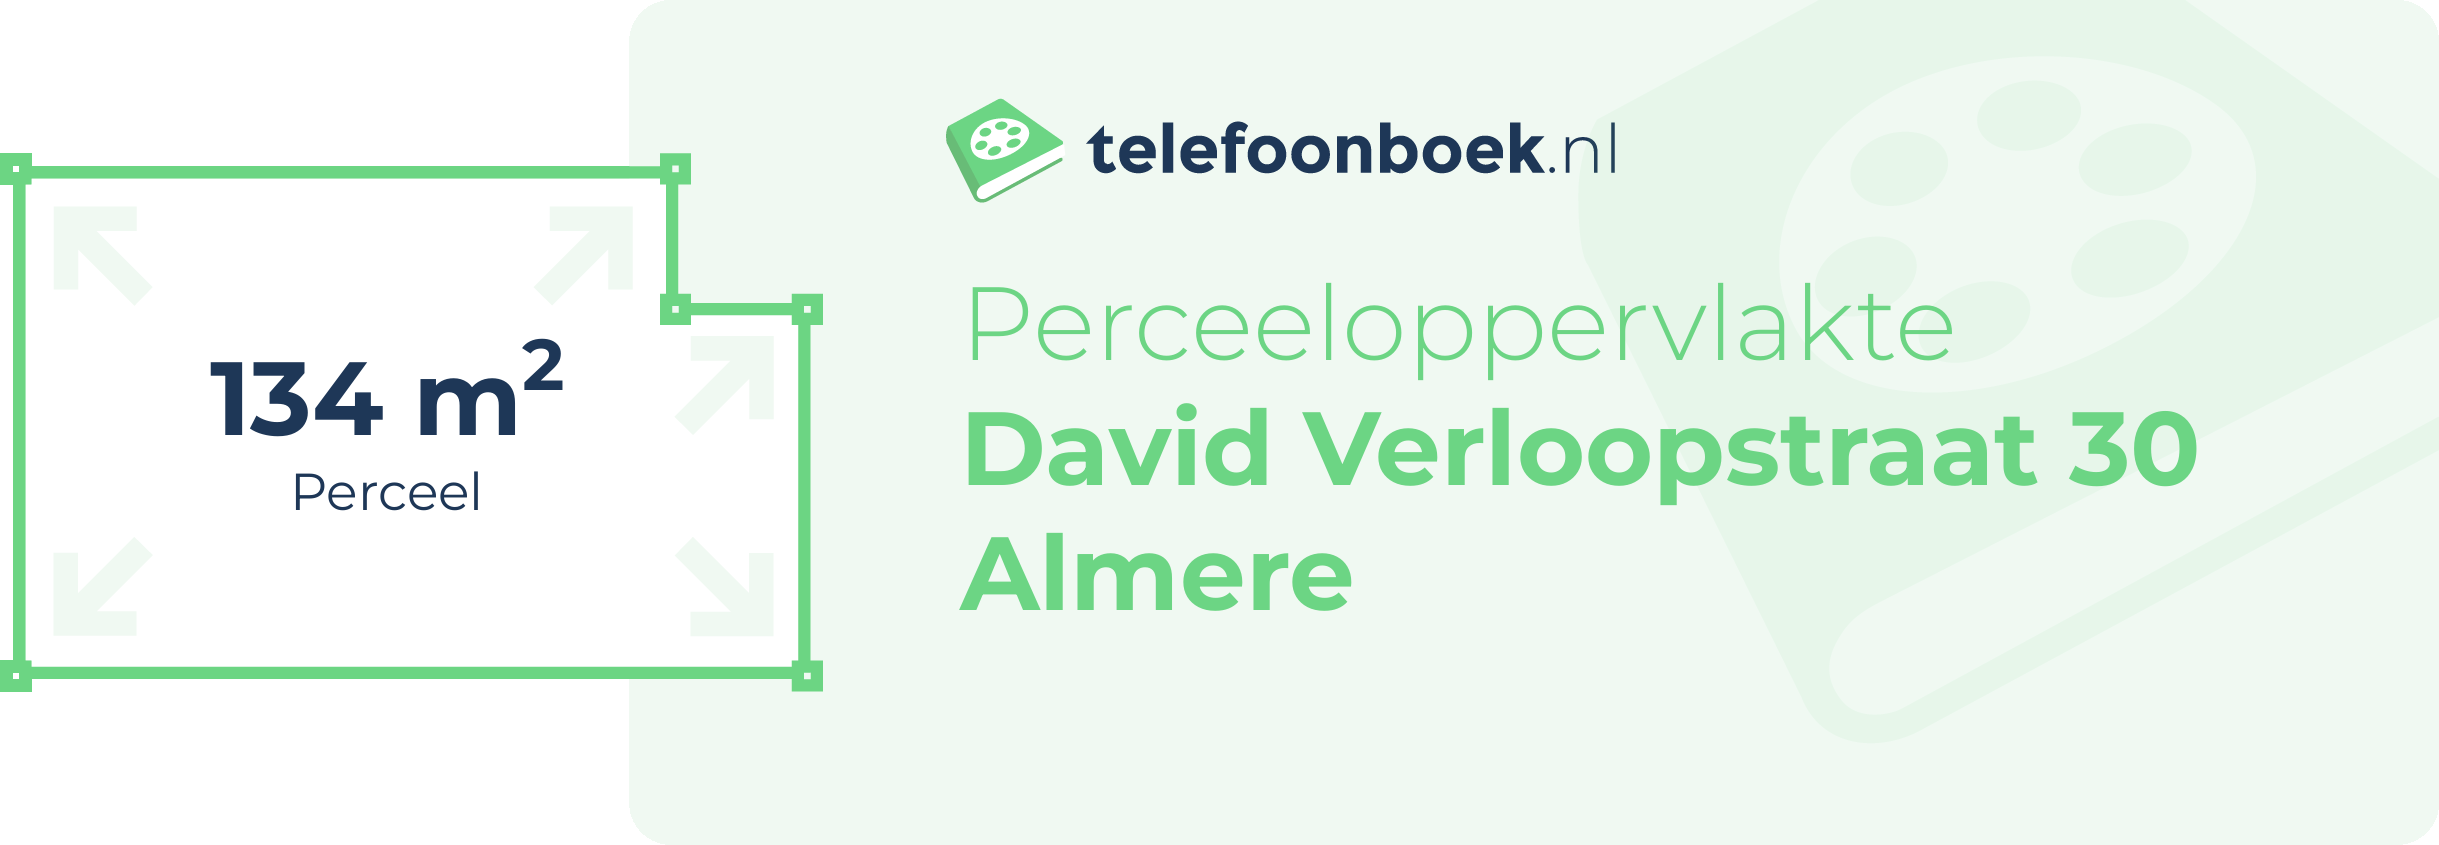 Perceeloppervlakte David Verloopstraat 30 Almere